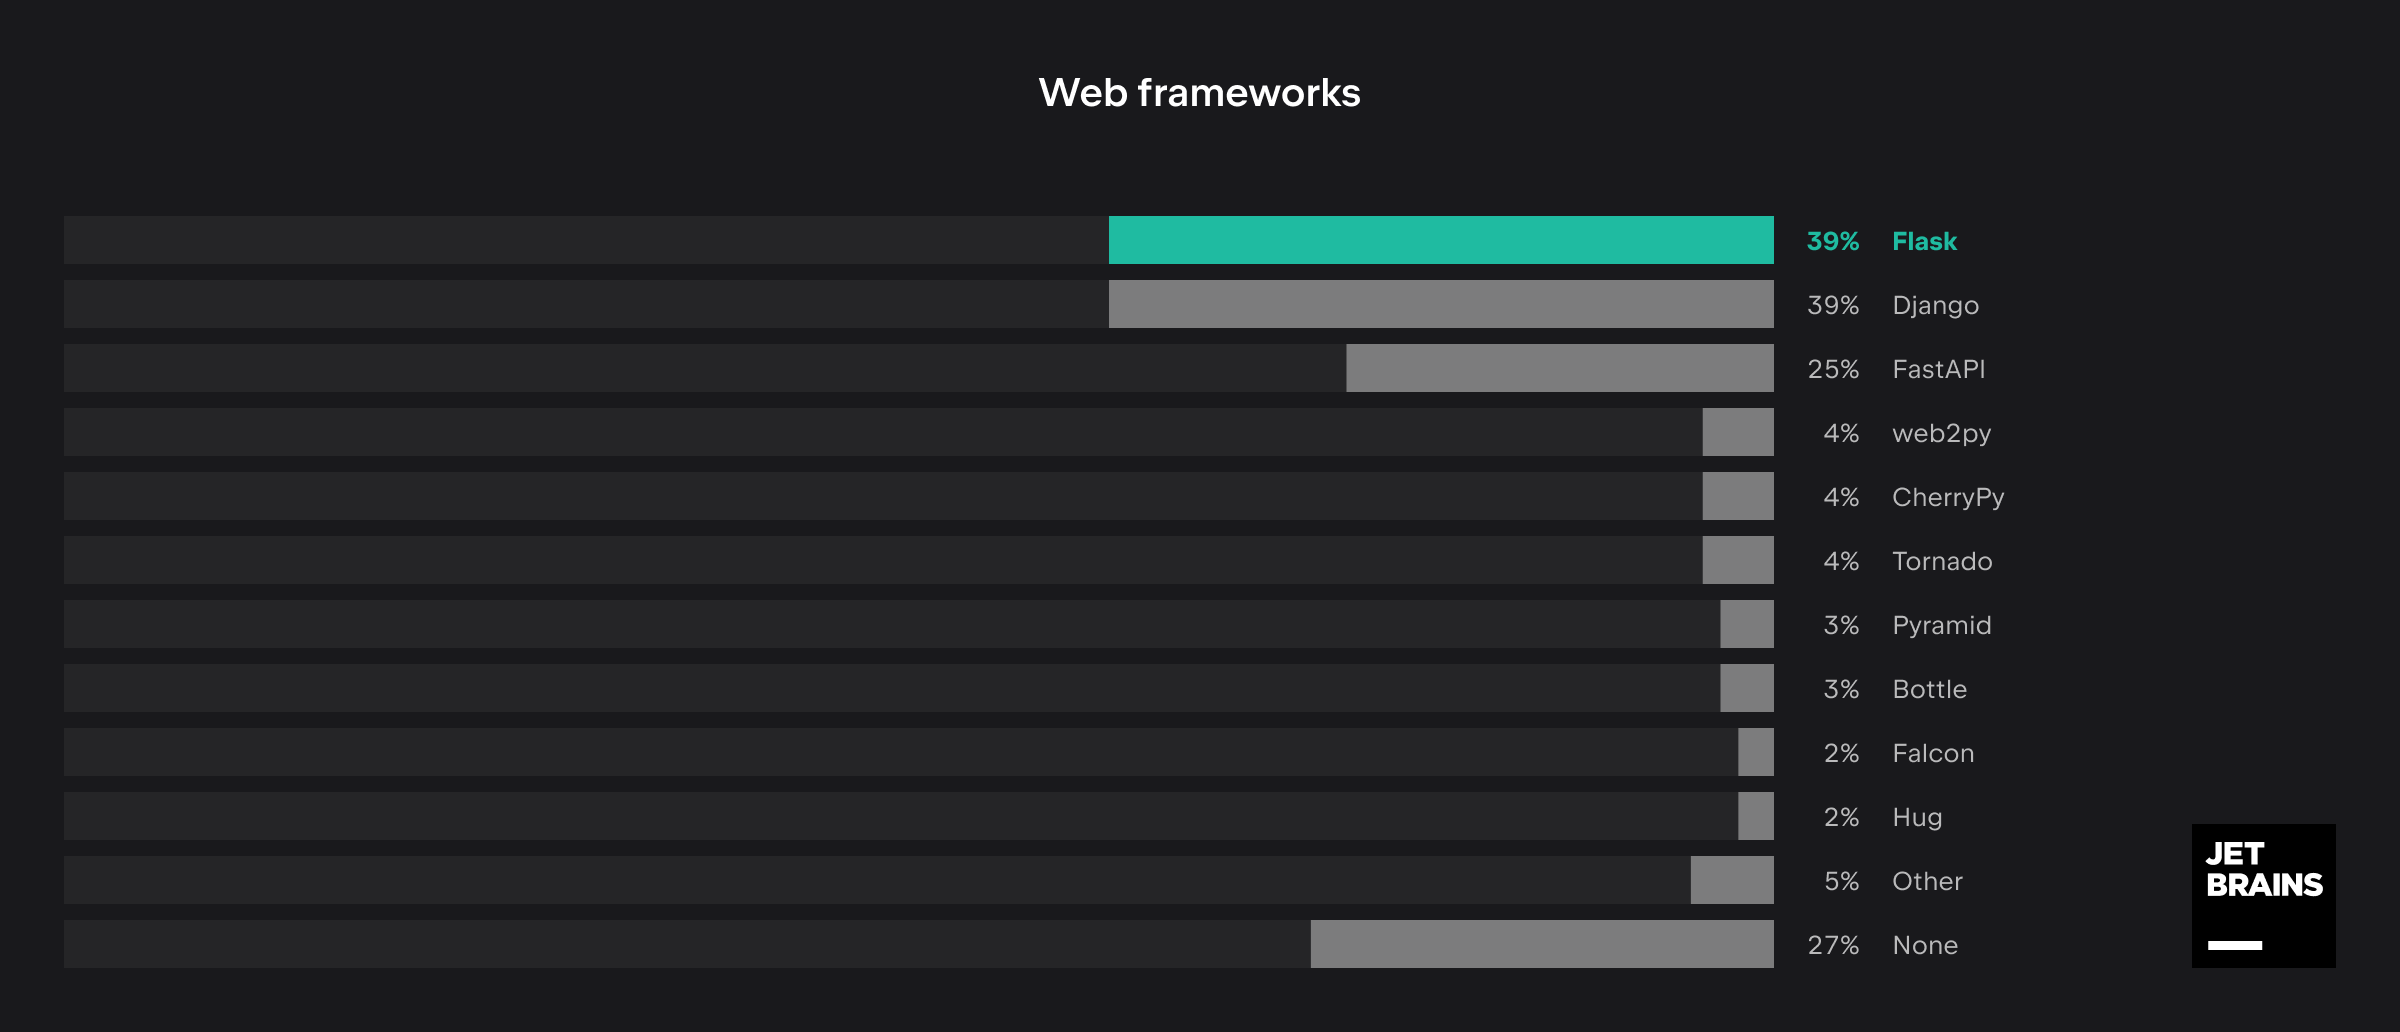 Web 框架的使用率占比